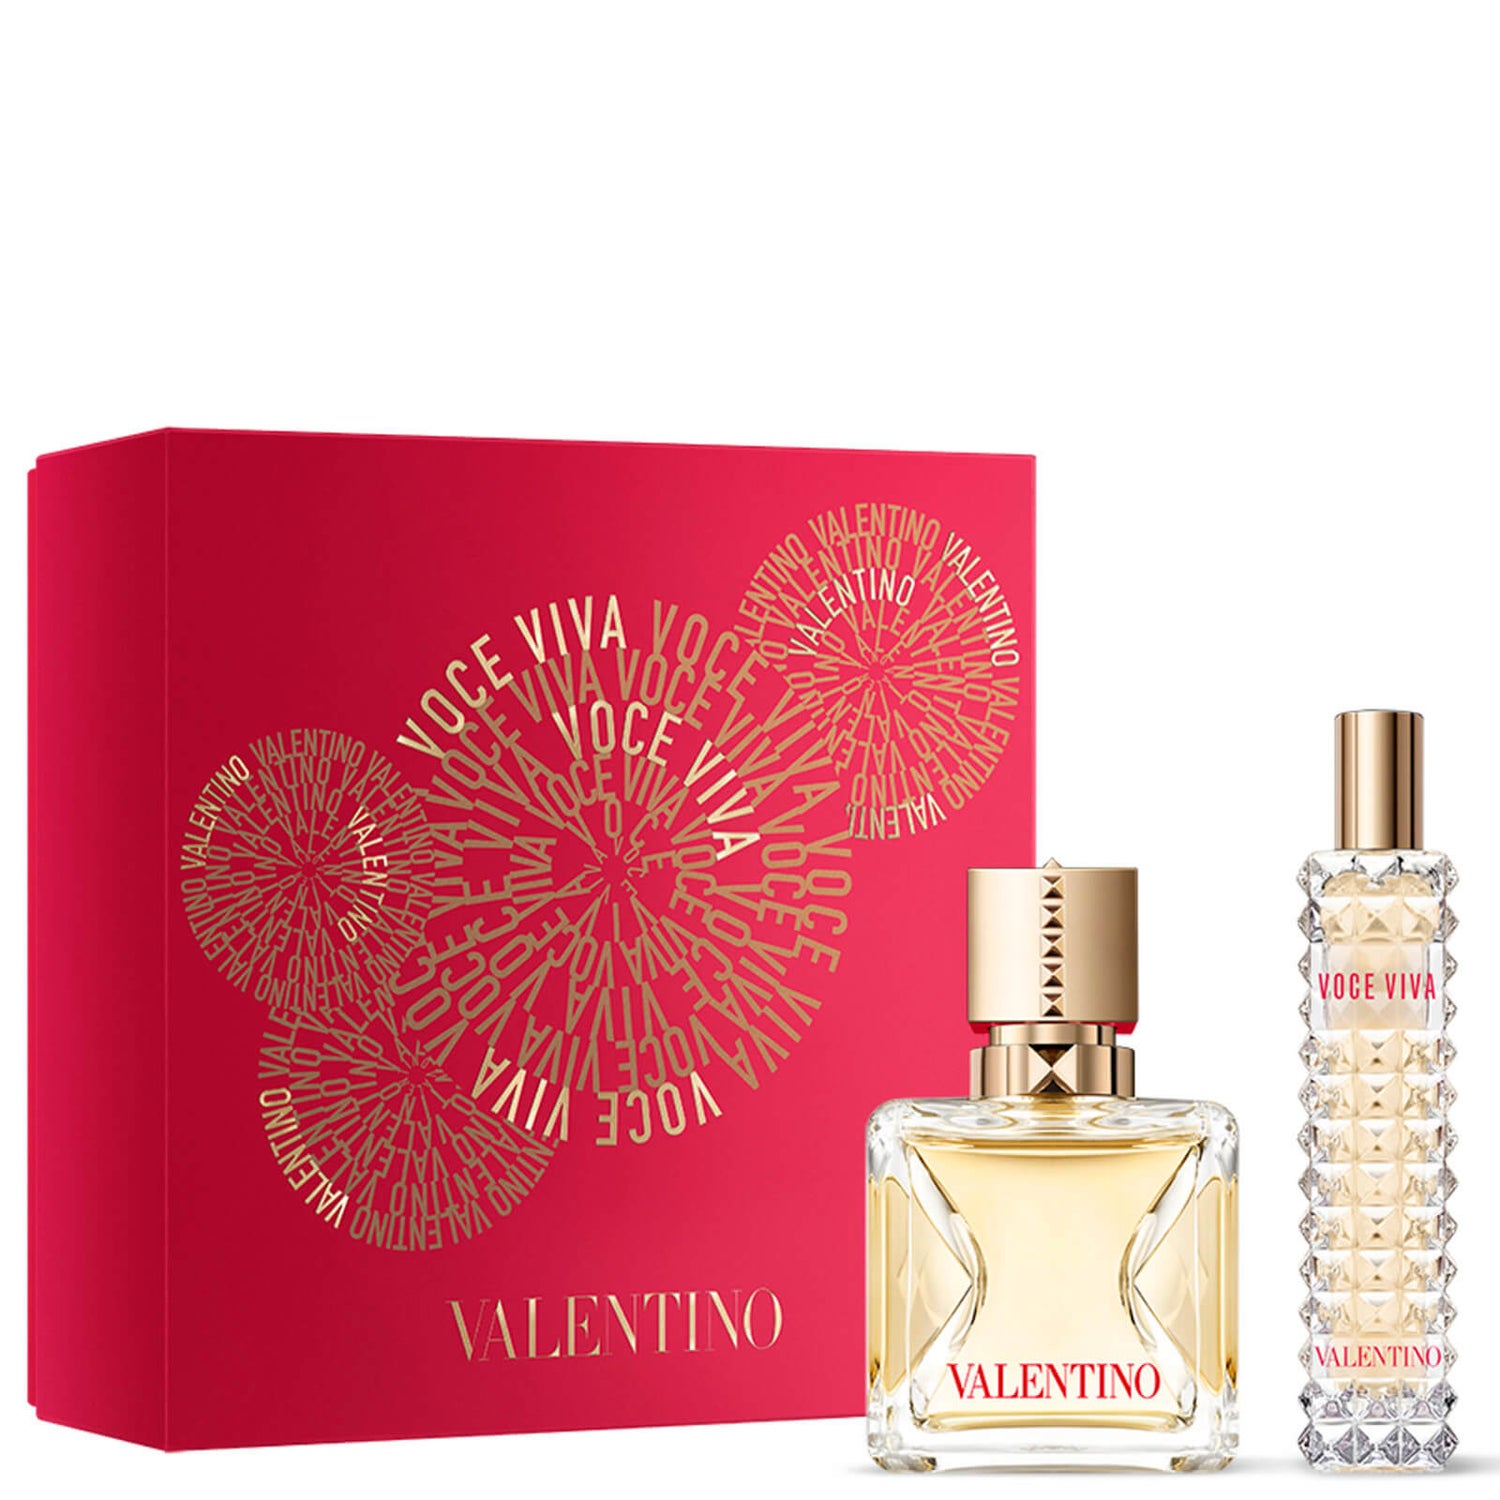 Valentino Voce Viva Eau de Parfum Set Regalo 50ml